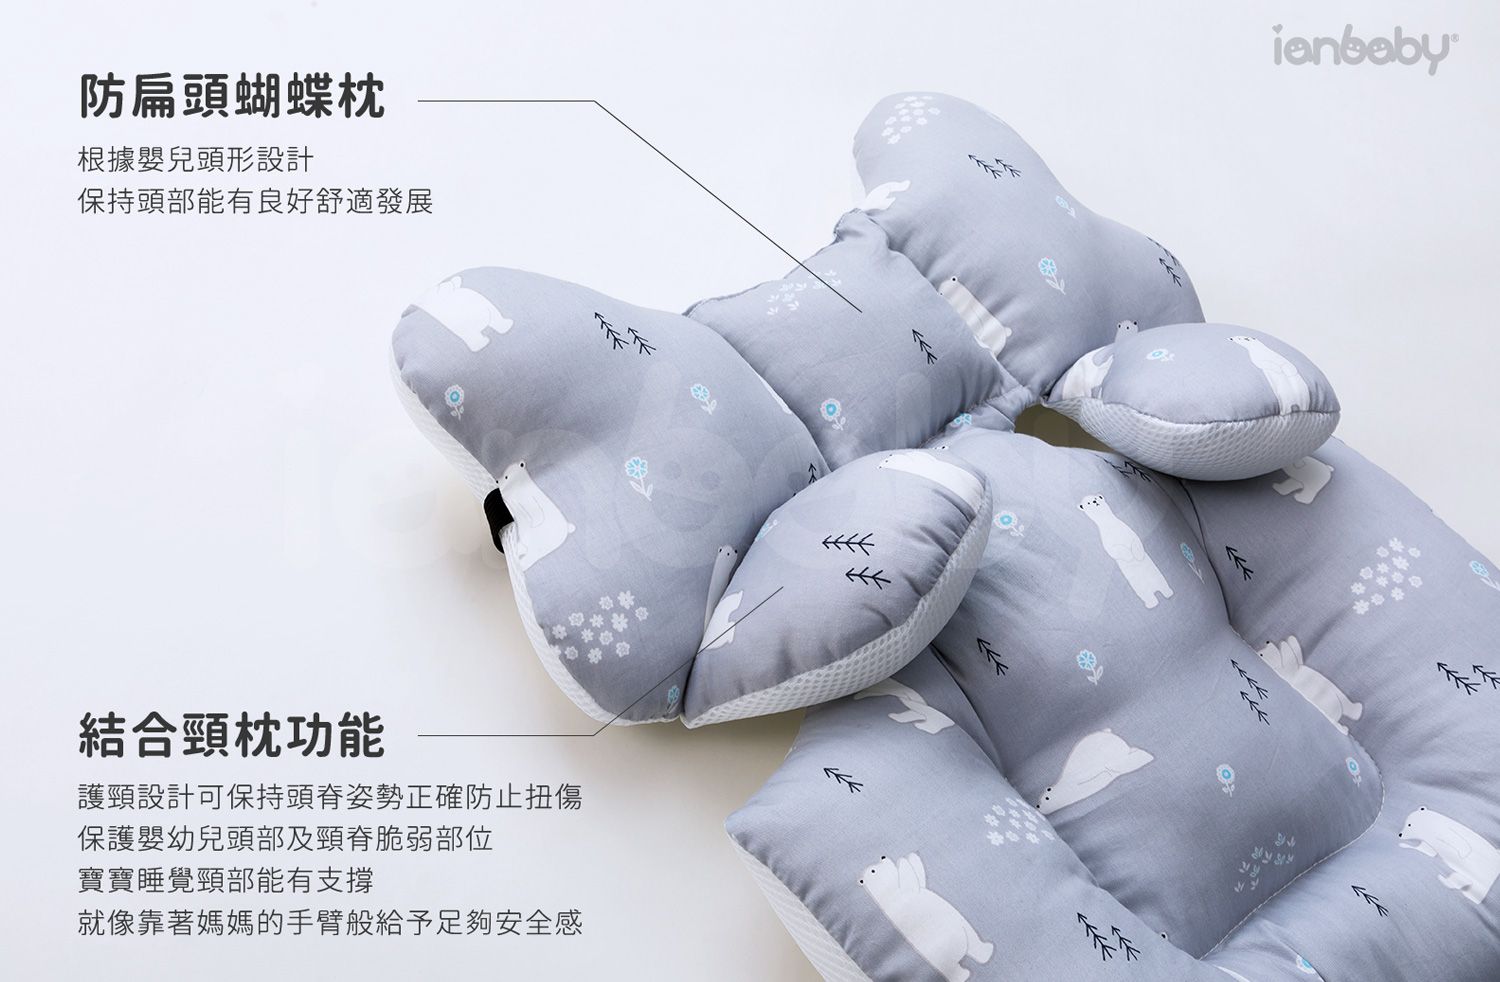 O-BS_04.jpg/ 包覆墊防扁頭蝴蝶枕結合頸枕功能設計，保持嬰幼兒頭部能有良好舒適發展，更可防止扭傷保護嬰幼兒頭部頸脊脆弱部位。